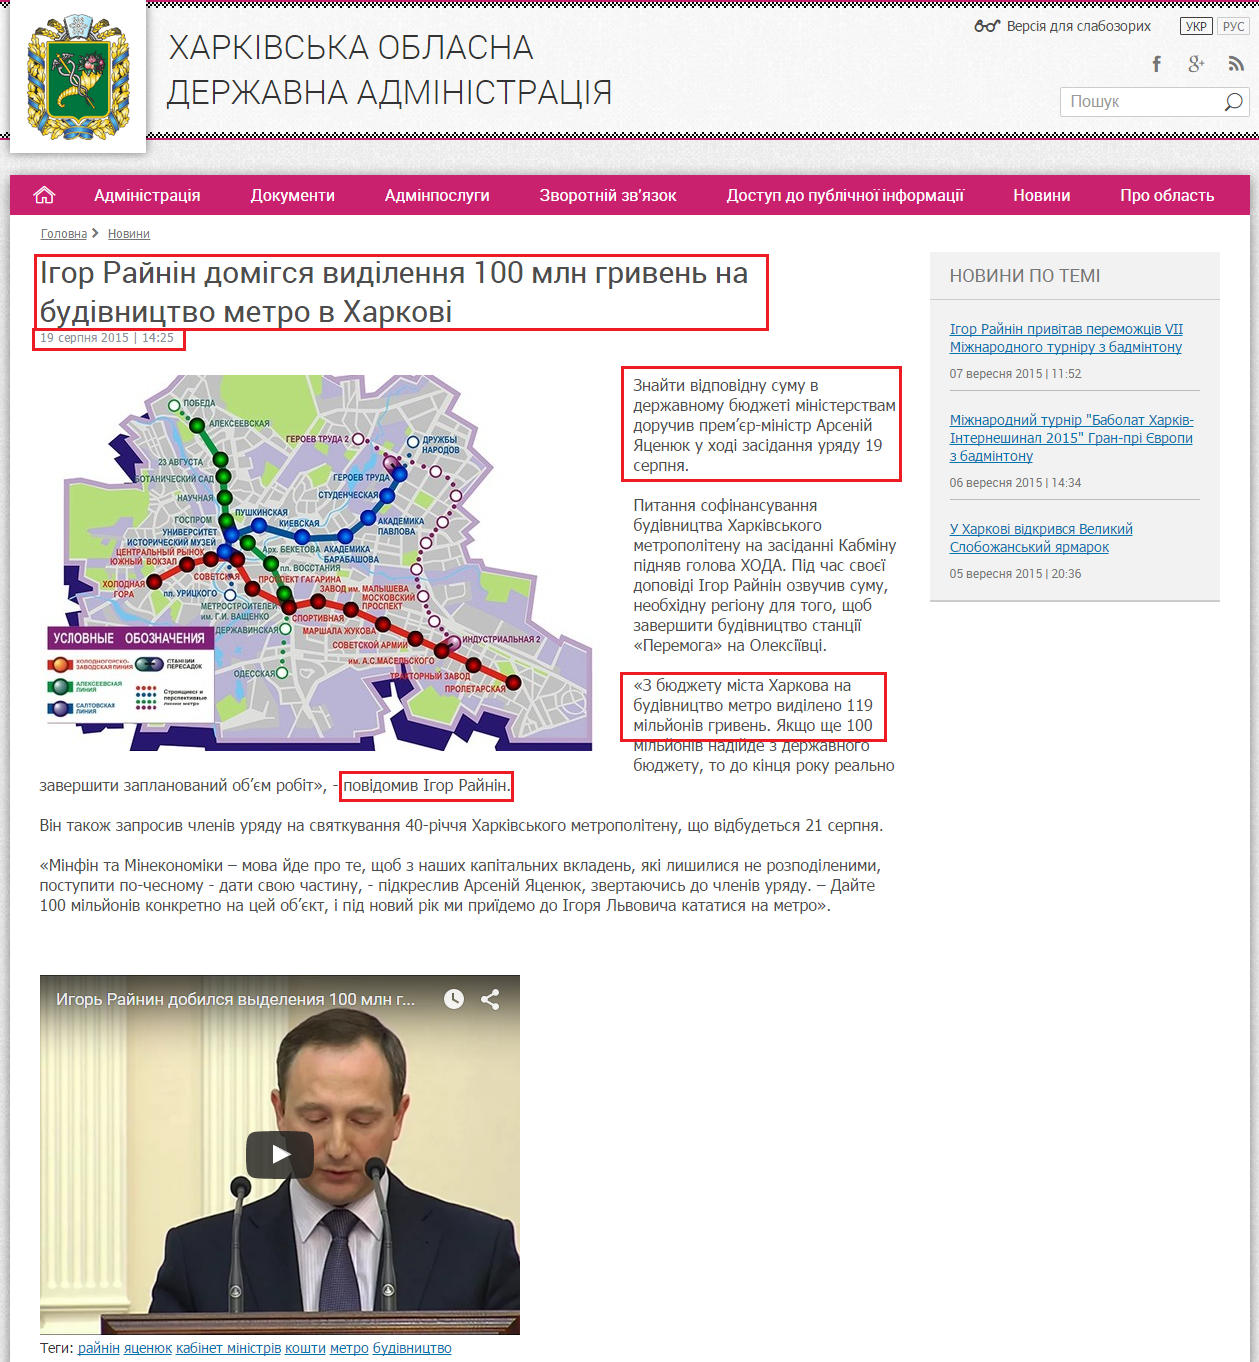 http://kharkivoda.gov.ua/news/75447